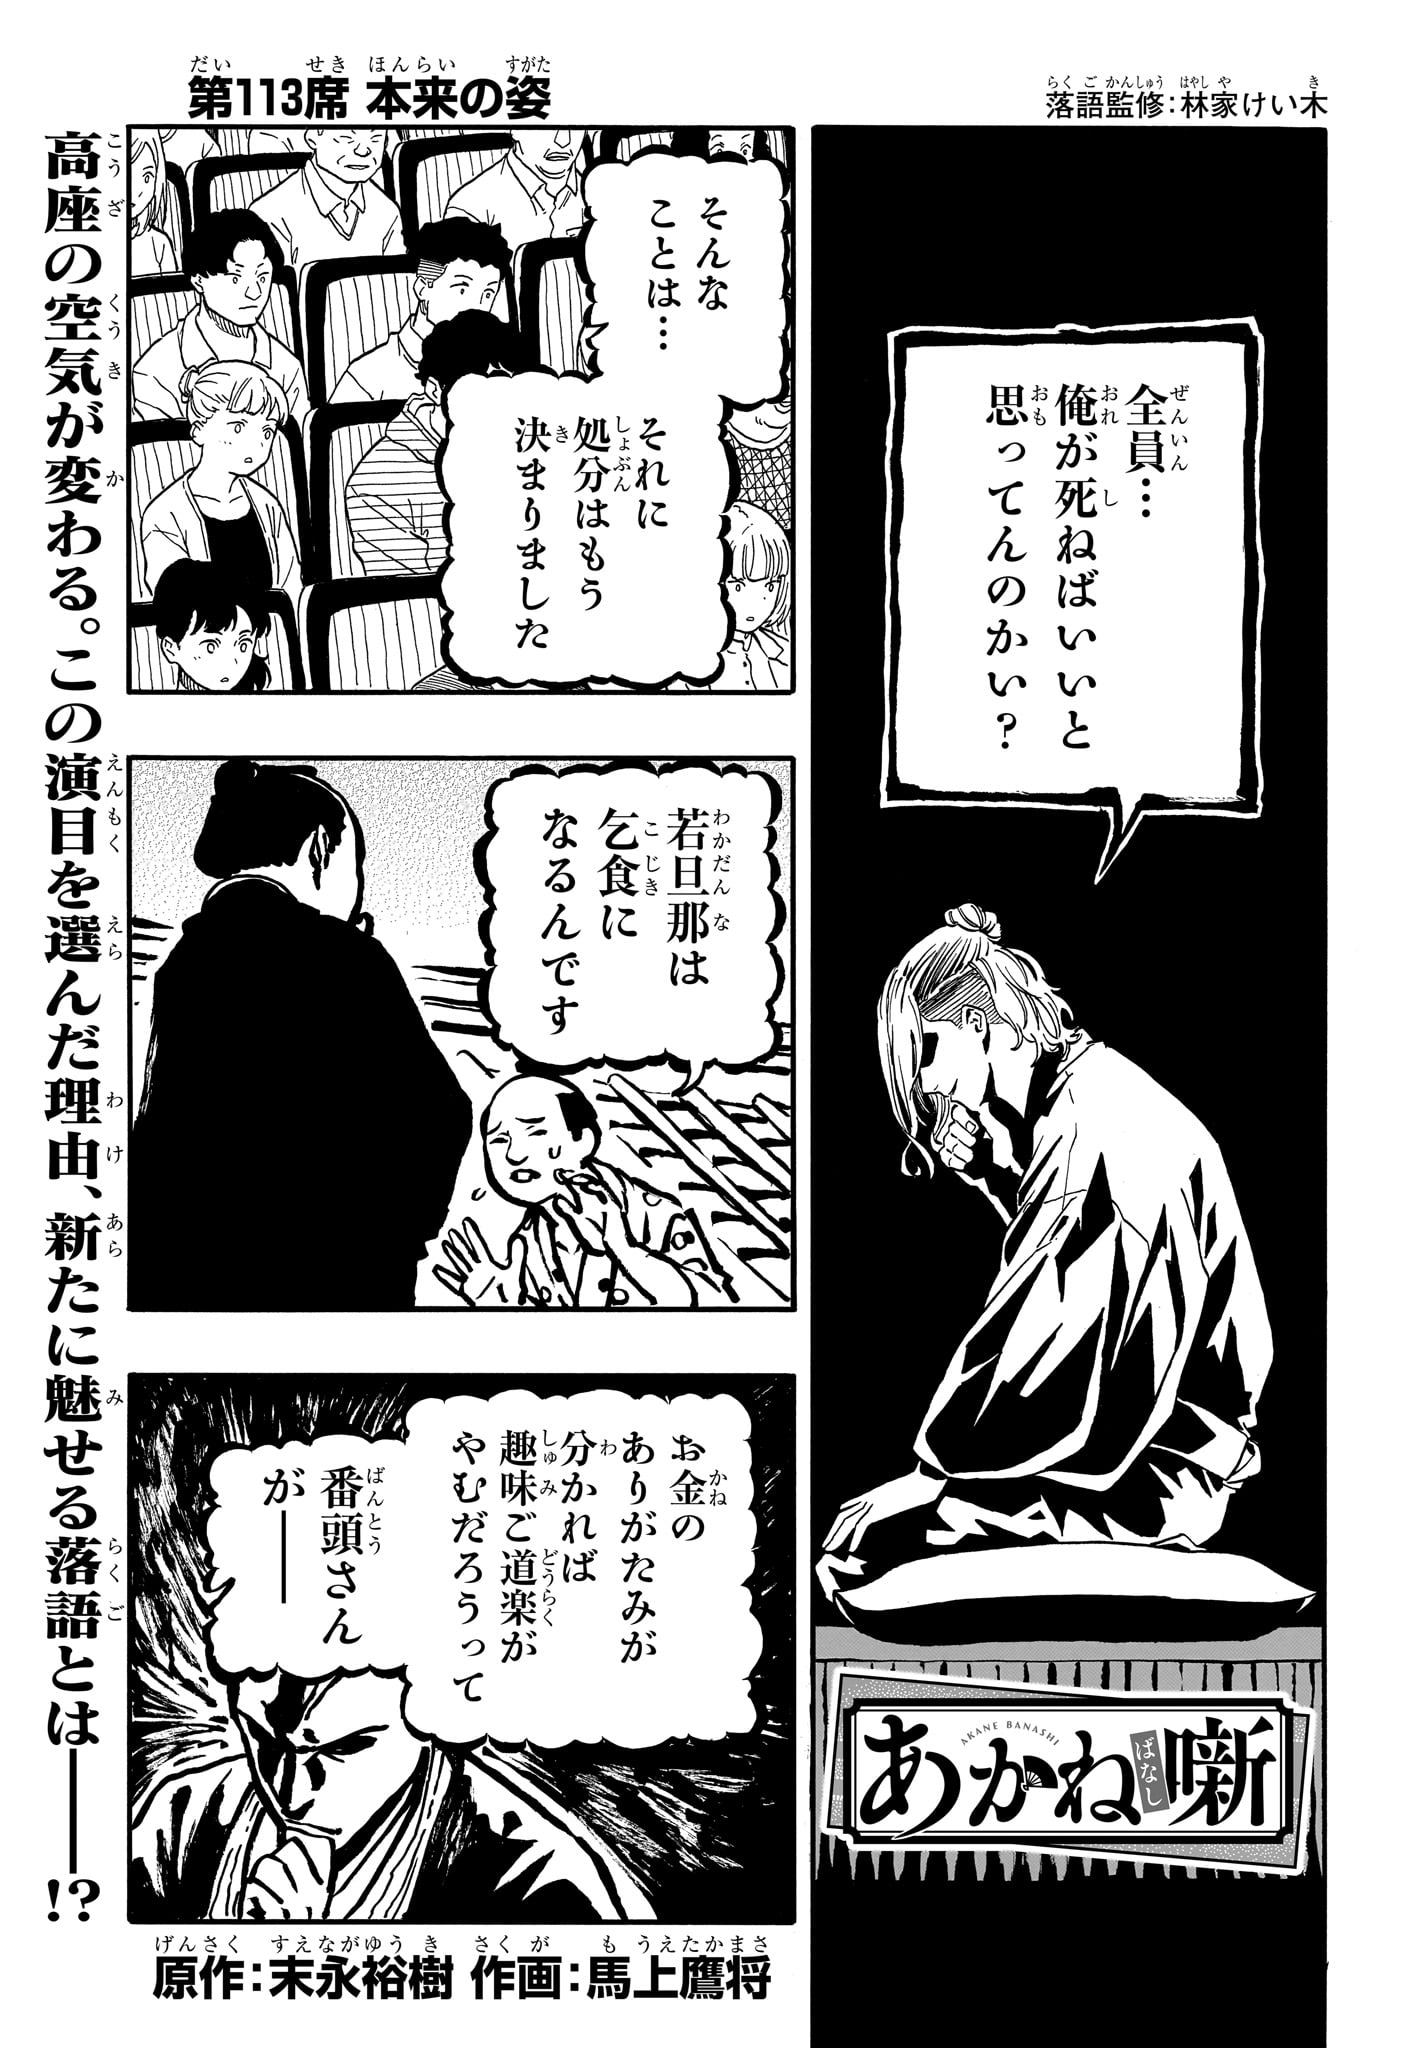 Akane-Banashi - Chapter 113 - Page 1